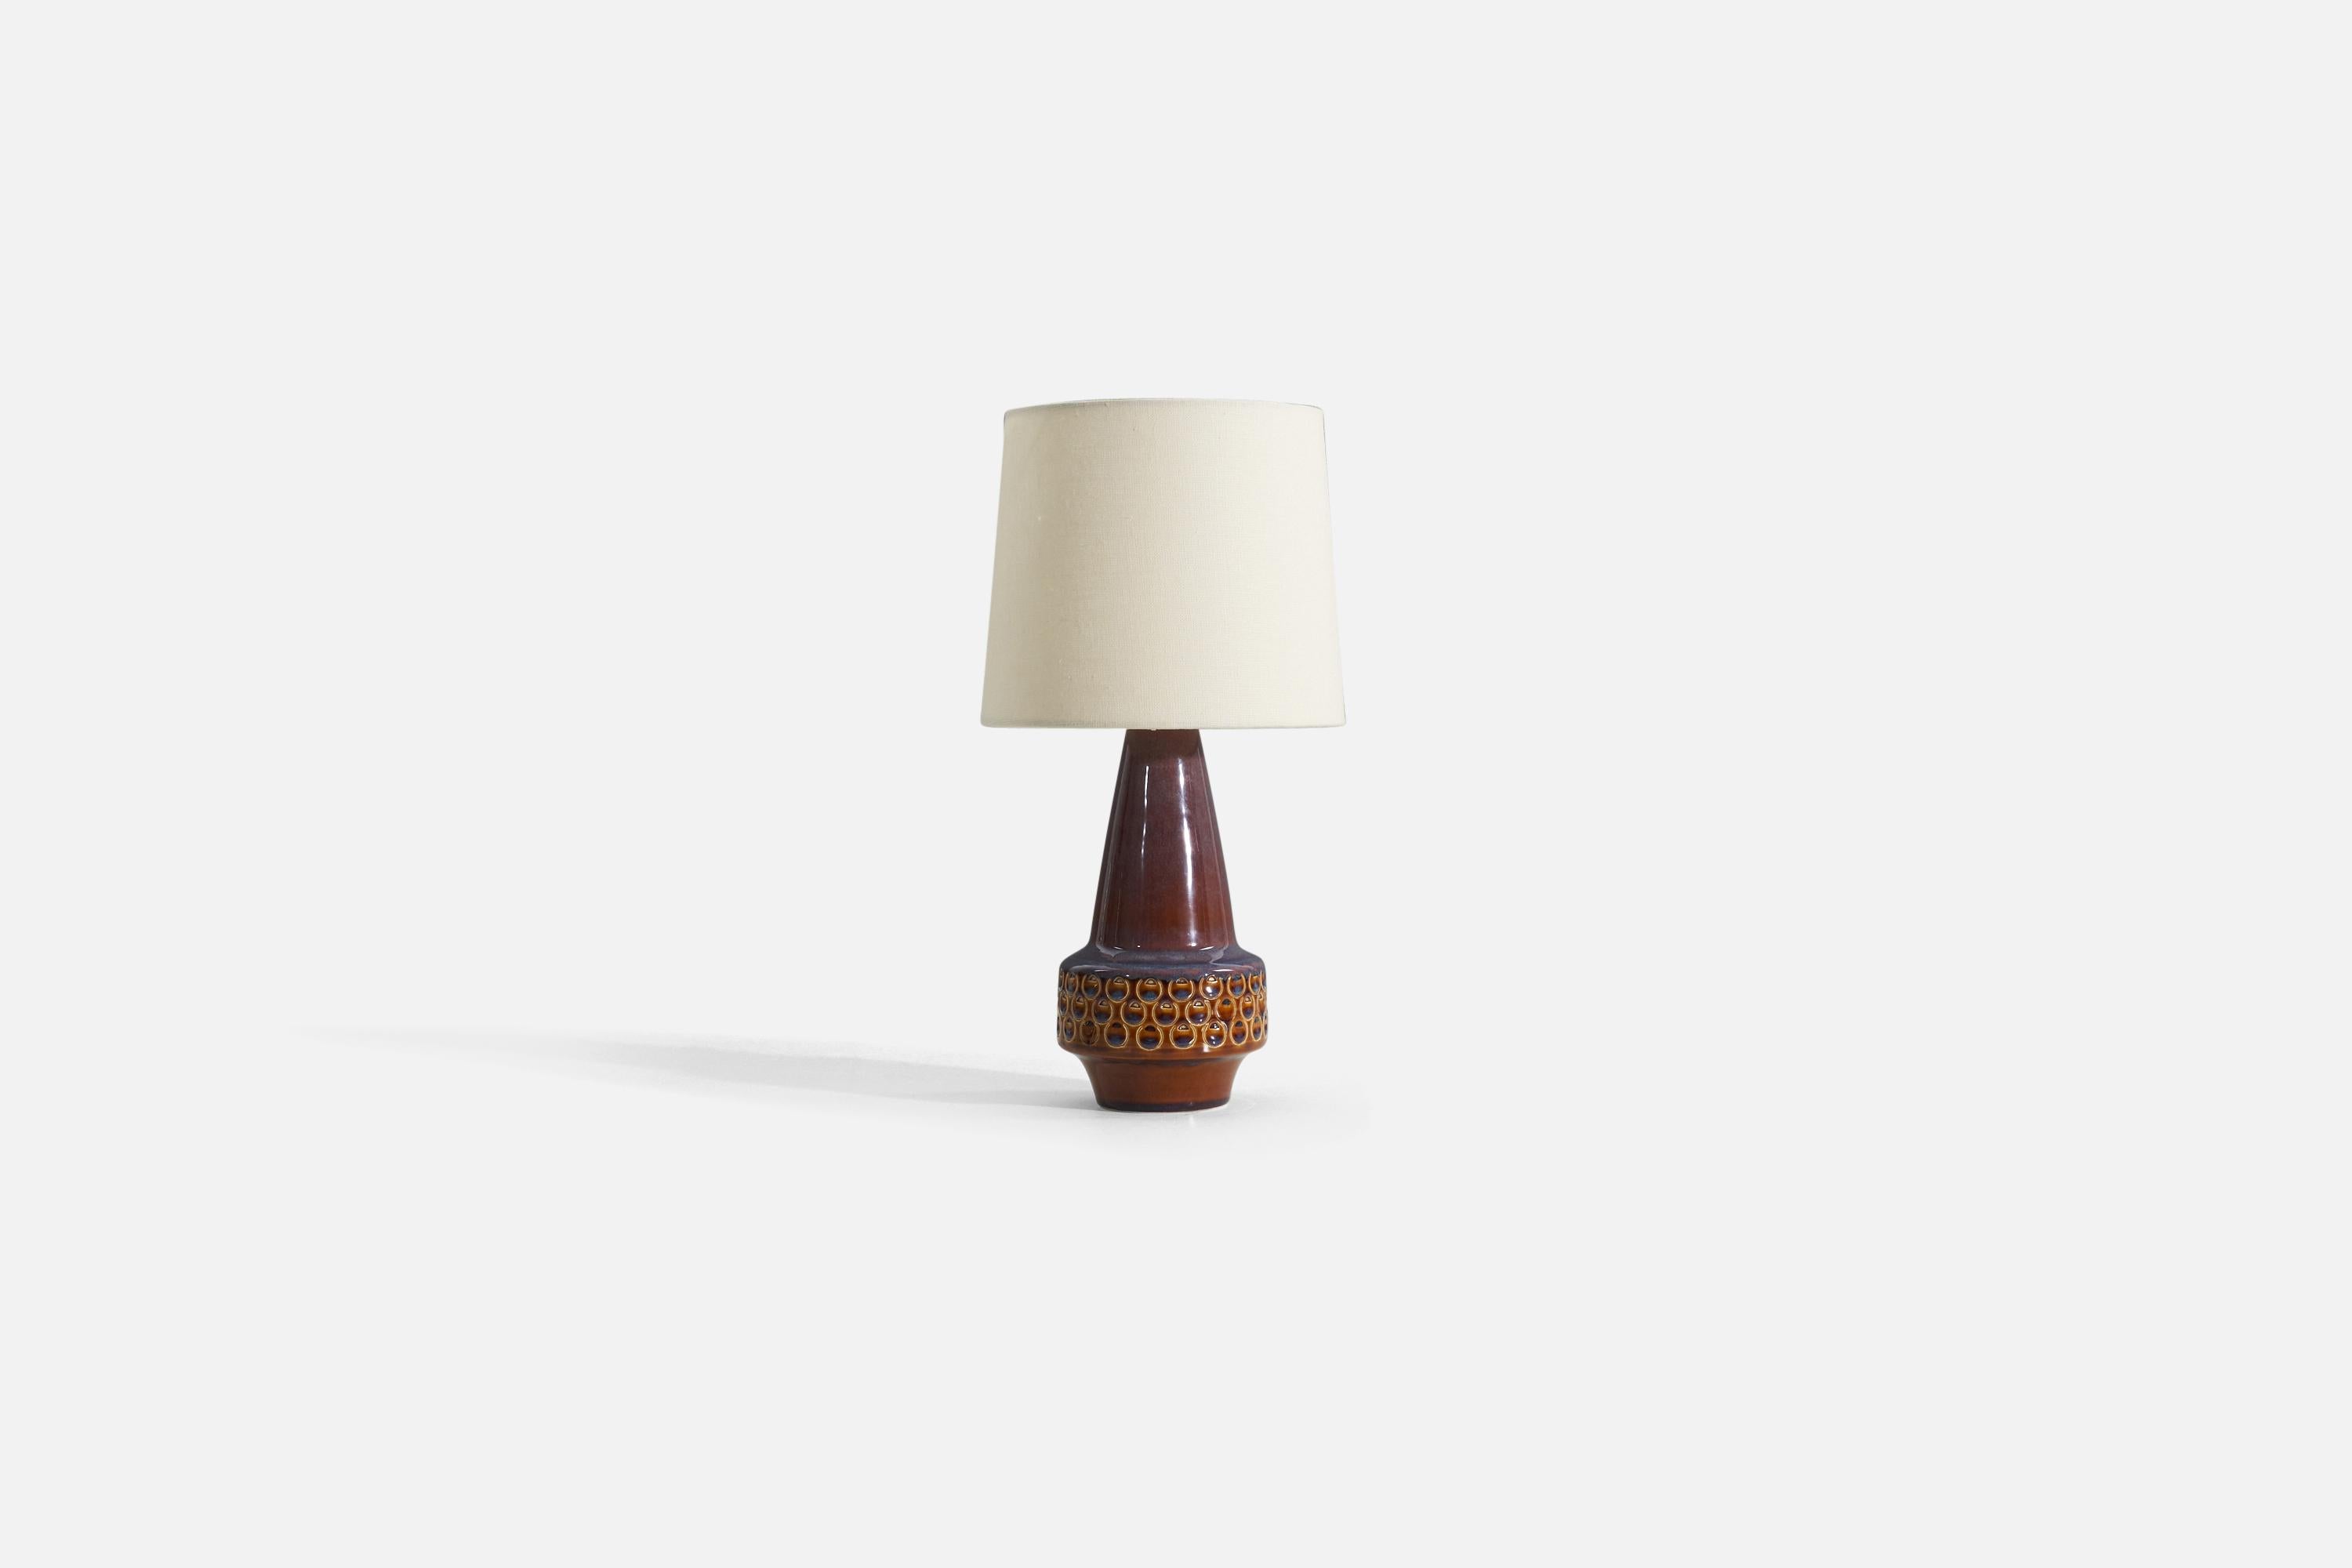 Tischlampe aus glasiertem Steingut, entworfen und hergestellt von Søholm Stentøj, Dänemark, 1960er Jahre.

Die angegebenen Maße beziehen sich auf die Lampe. Verkauft ohne Lampenschirm.

Als Referenz:

Farbton : 7 x 8 x 7
Lampe mit Schirm :